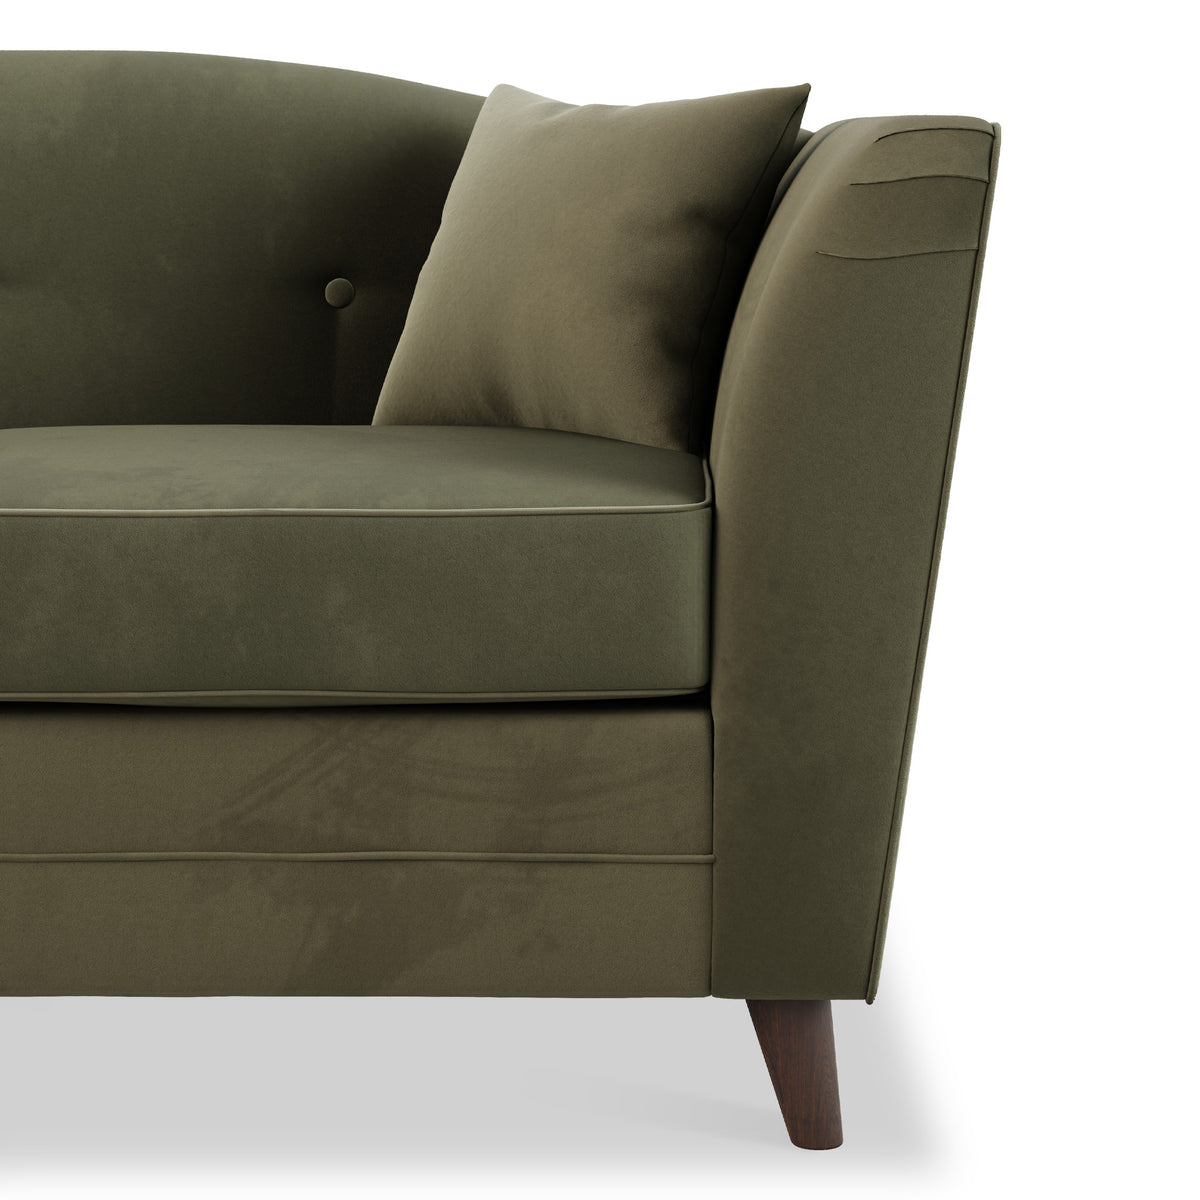 Pippa Fern Green Plush Velvet 2 Seater Sofa from Roseland Furniture